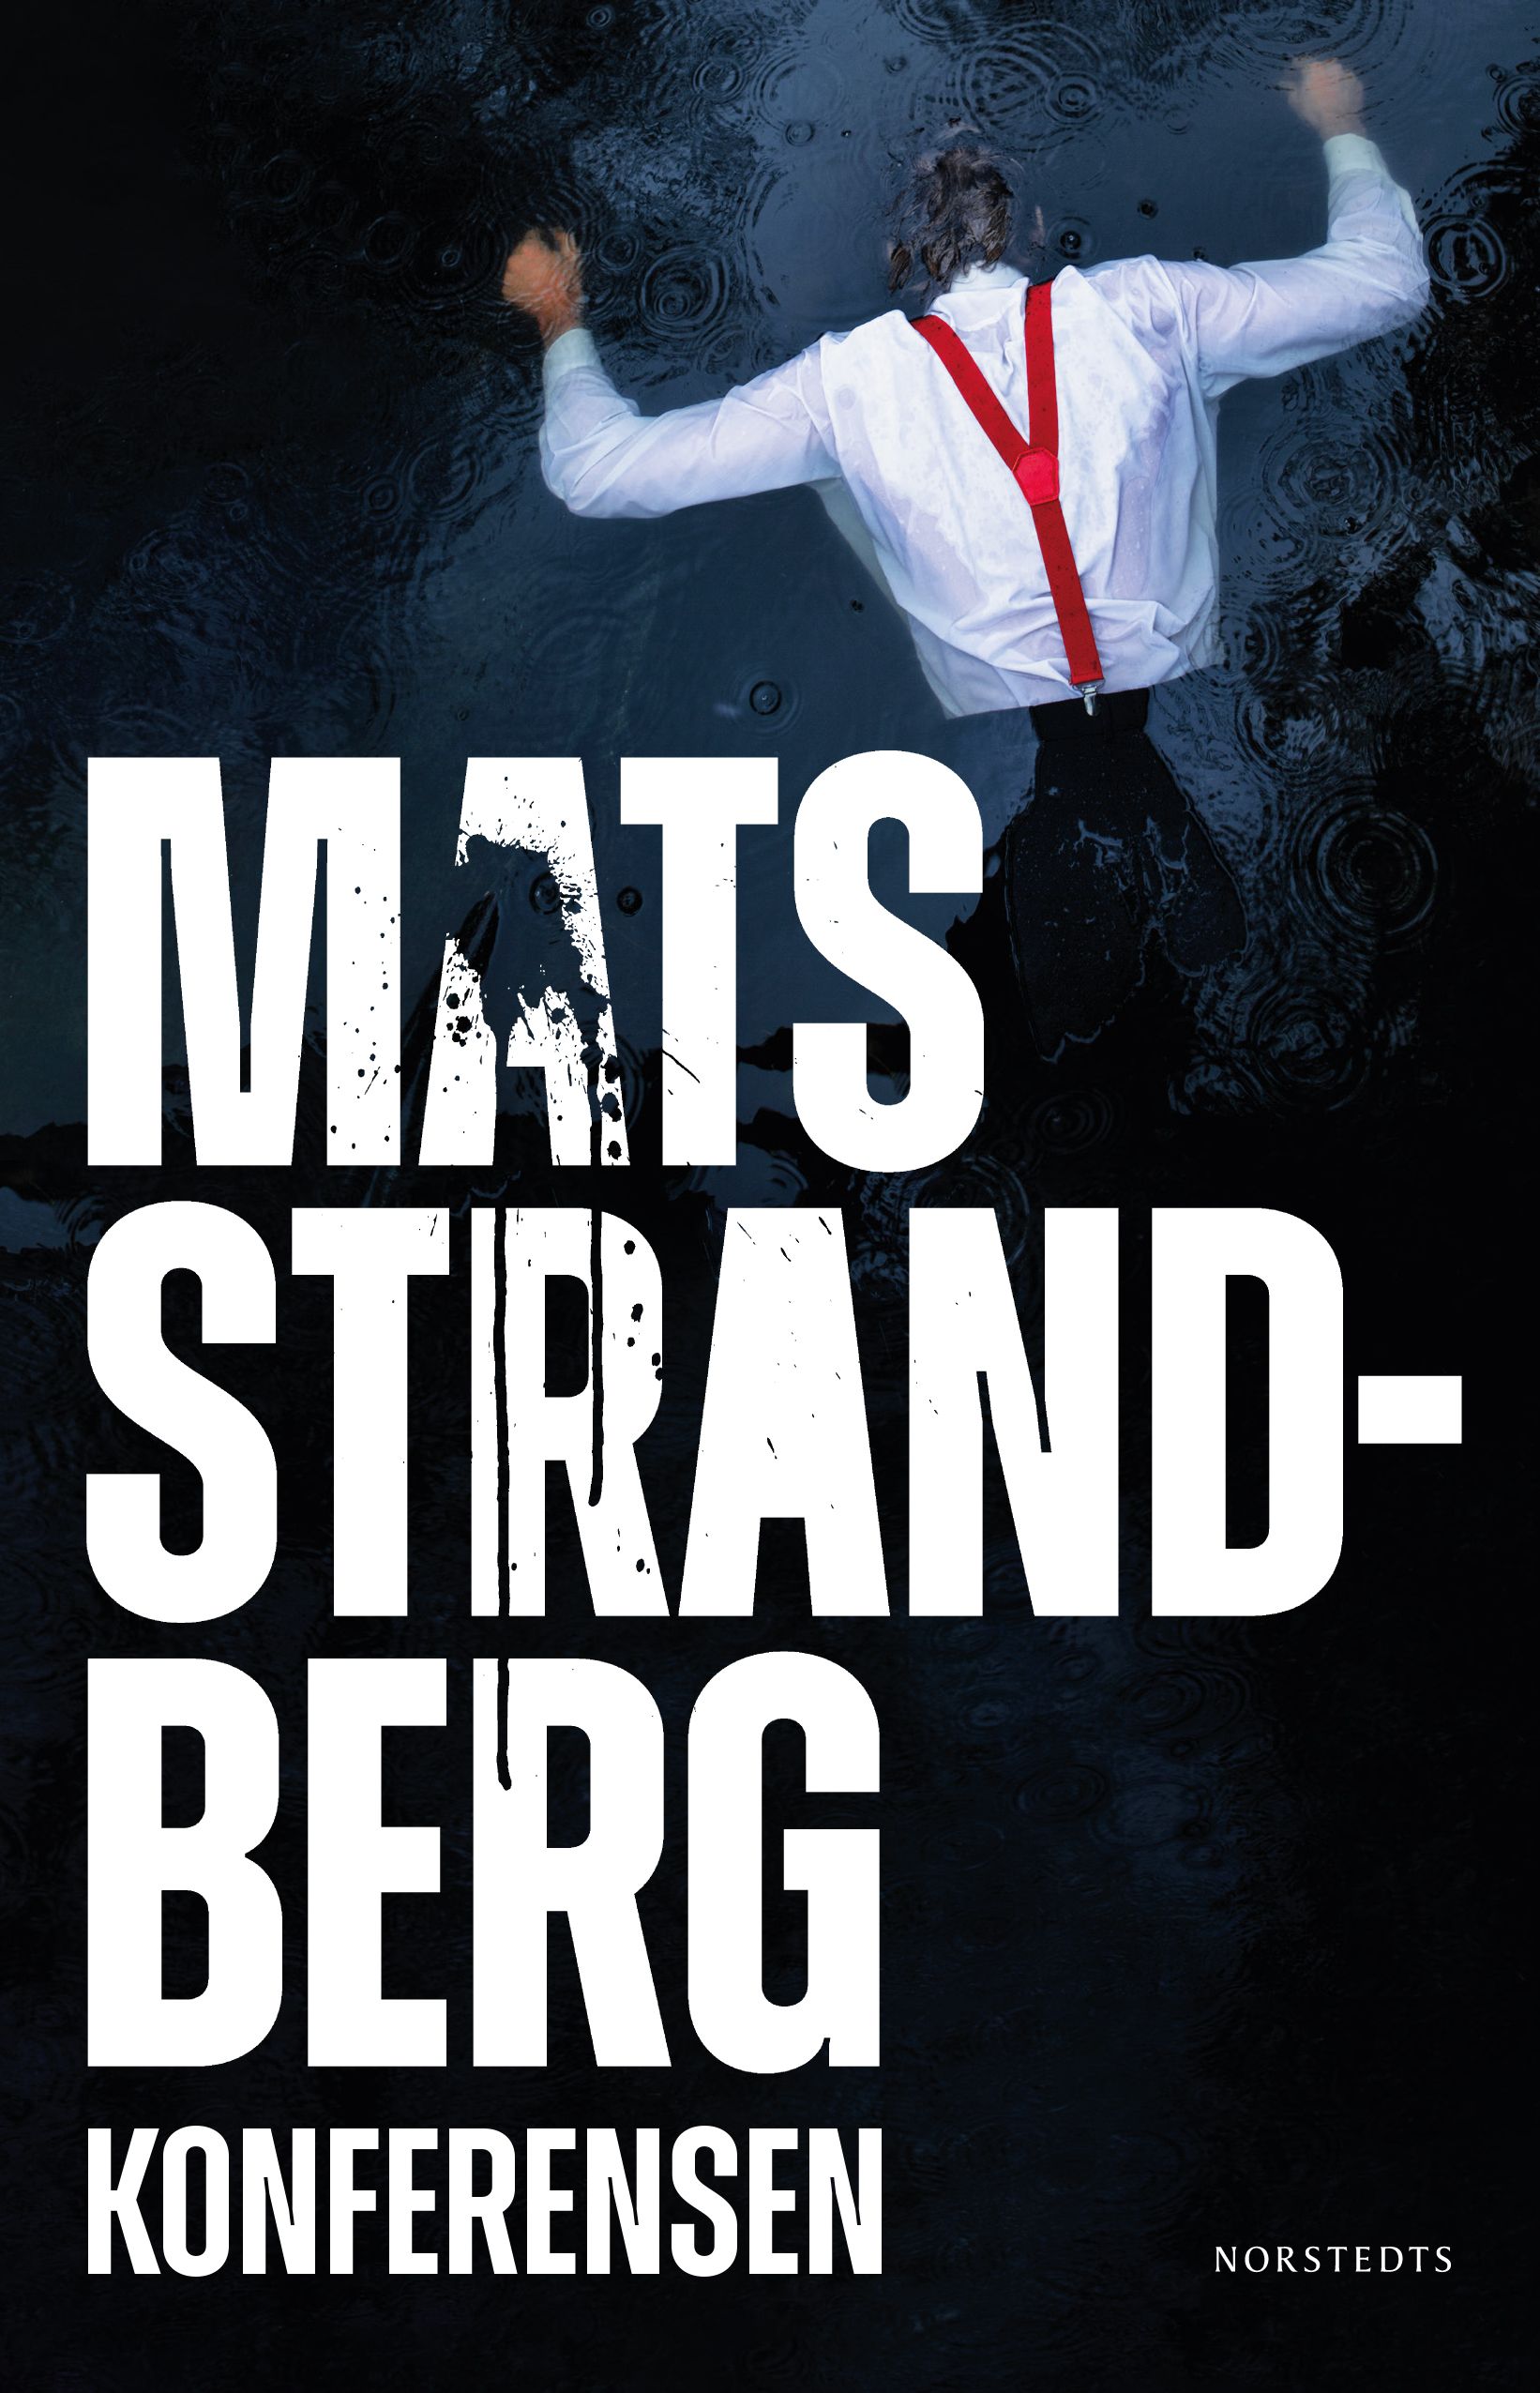 Konferensen, e-bog af Mats Strandberg